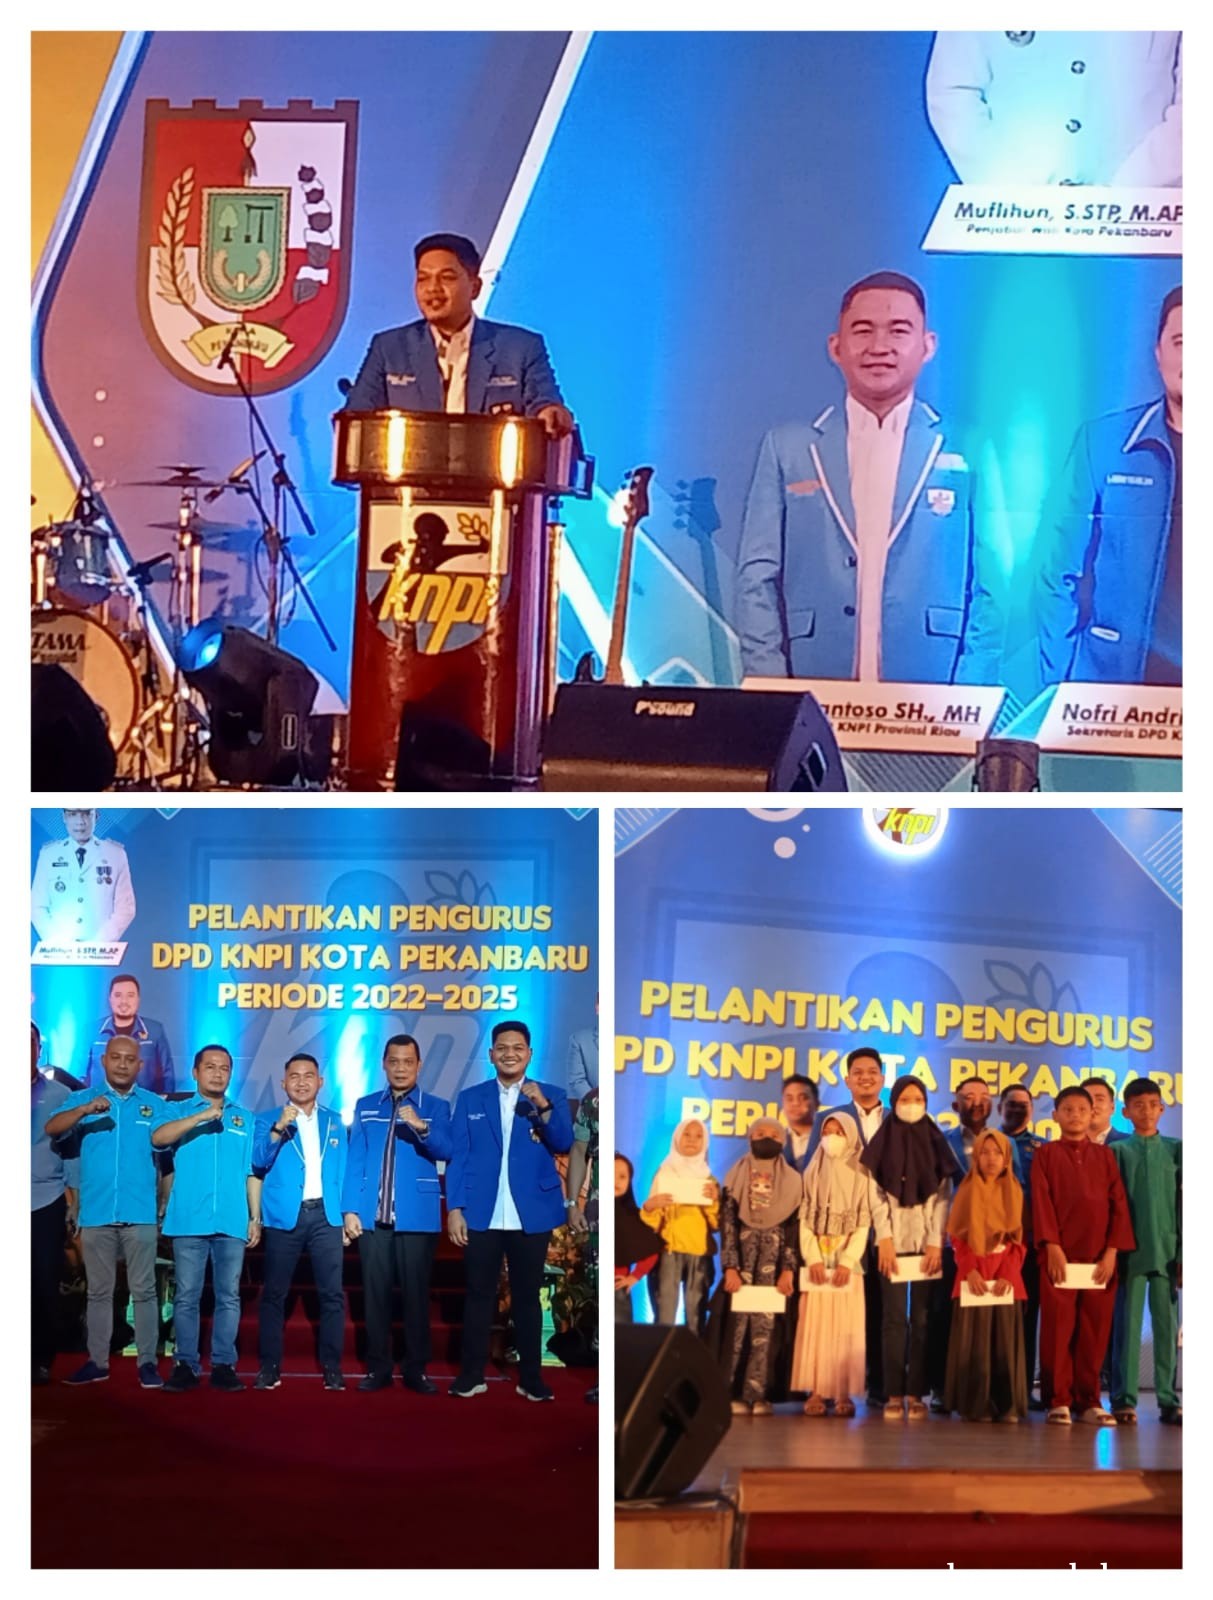 Faisal Islami Dilantik Jadi Ketua DPD KNPI Kota Pekanbaru Periode 2022-2025